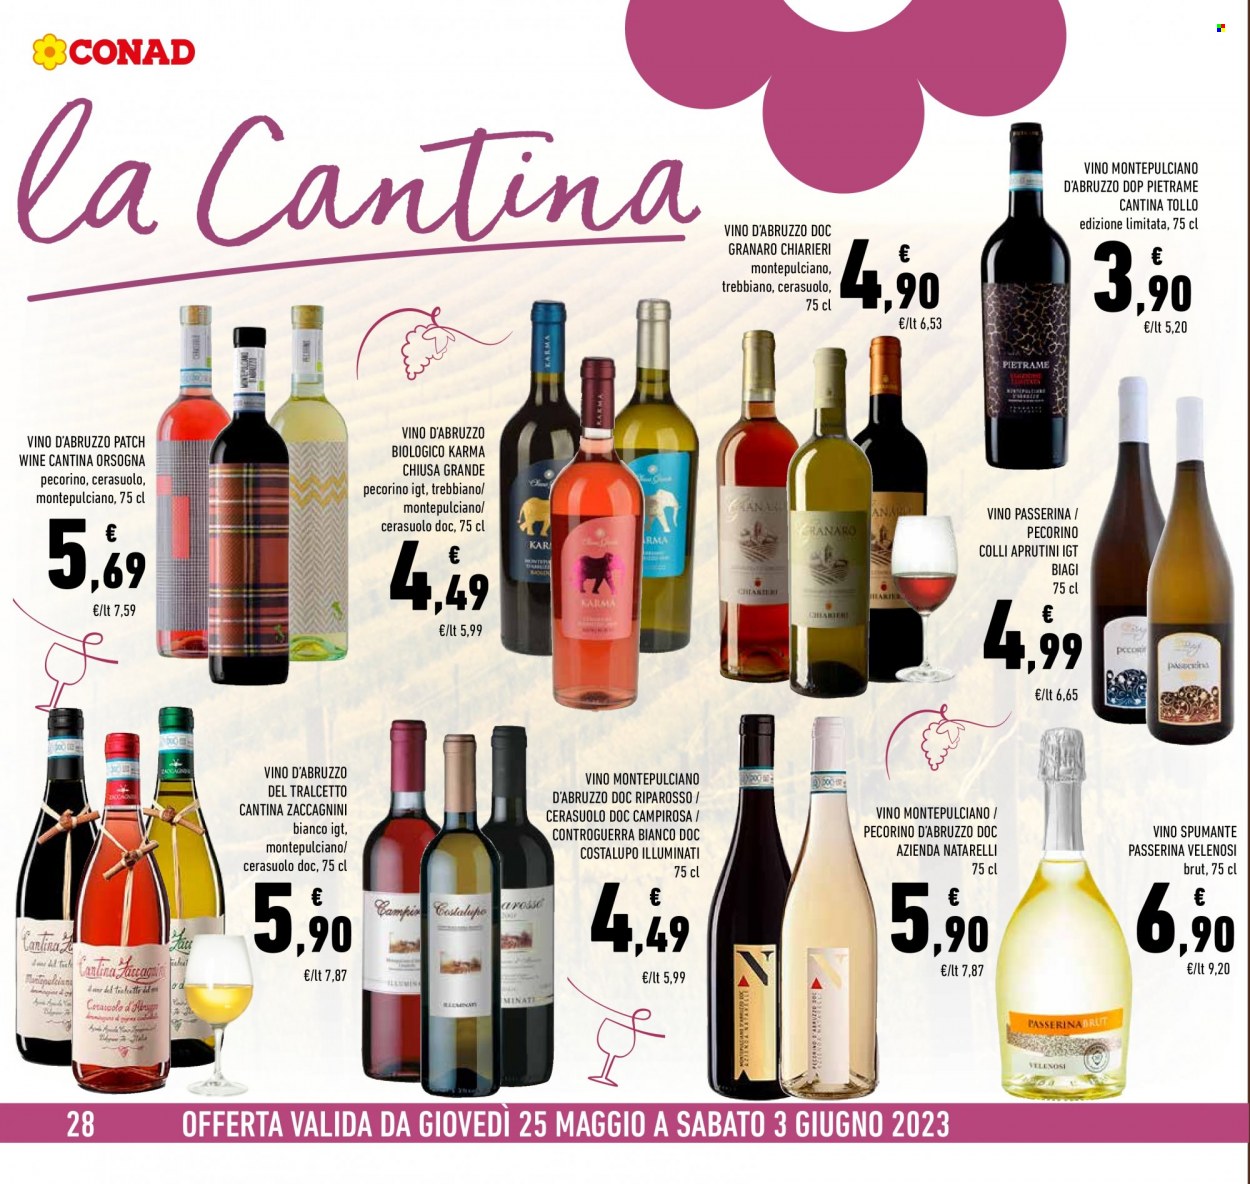 thumbnail - Volantino Conad - 25/5/2023 - 3/6/2023 - Prodotti in offerta - vino bianco, vino rosso, Spumante, vino, Montepulciano d'Abruzzo, Trebbiano, Cerasuolo. Pagina 28.